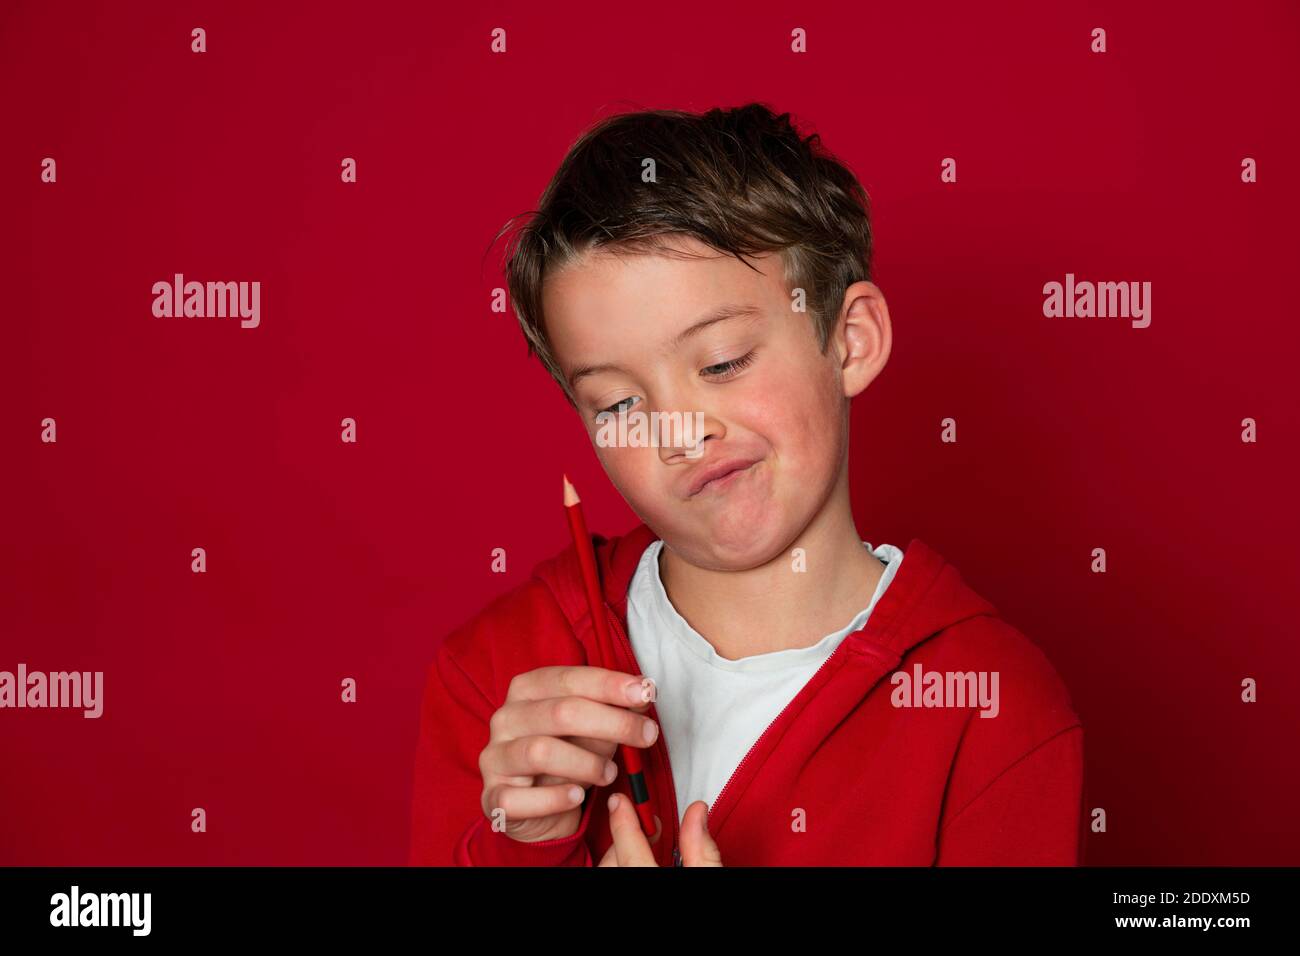 un jeune garçon d'école cool pose avec un crayon rouge avant d'arrière-plan rouge Banque D'Images